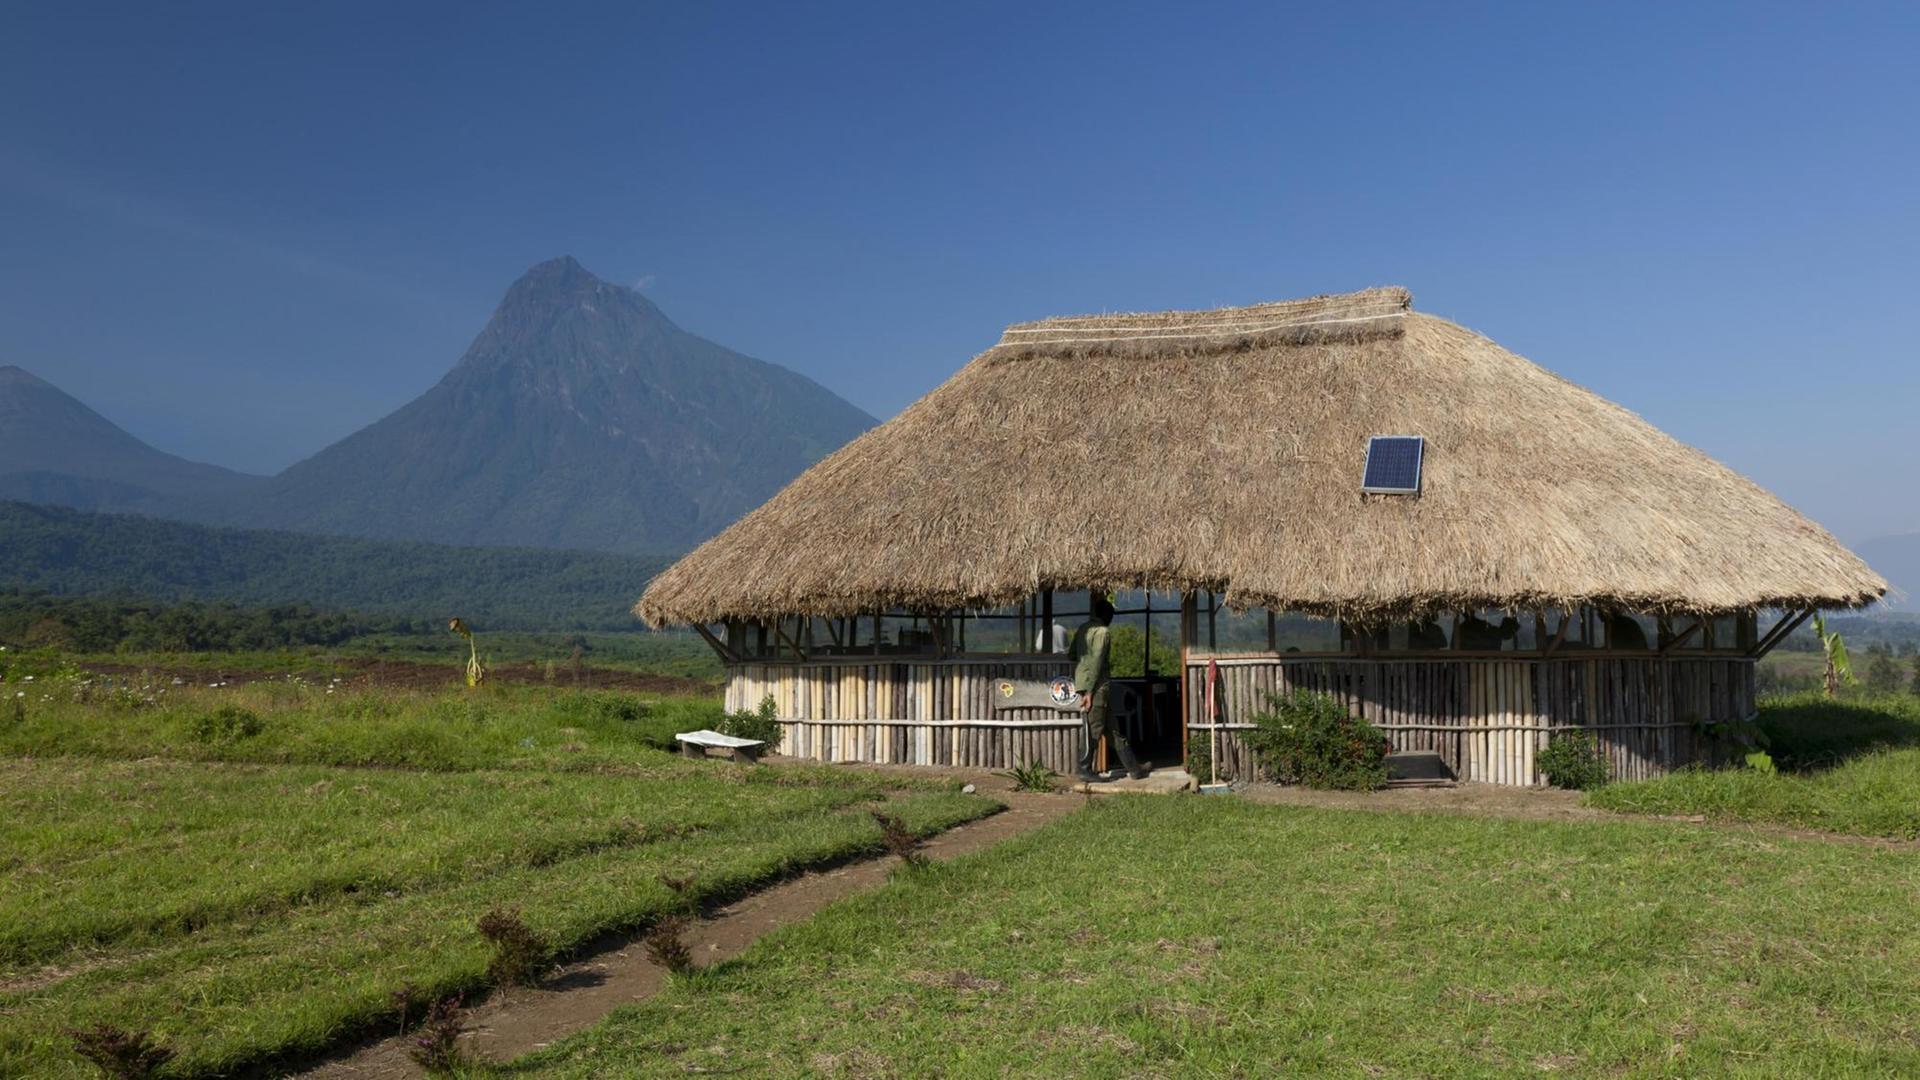 Hütte der Parkranger des Virunga-Nationalparks am Fuße des Vulkans Mikeno